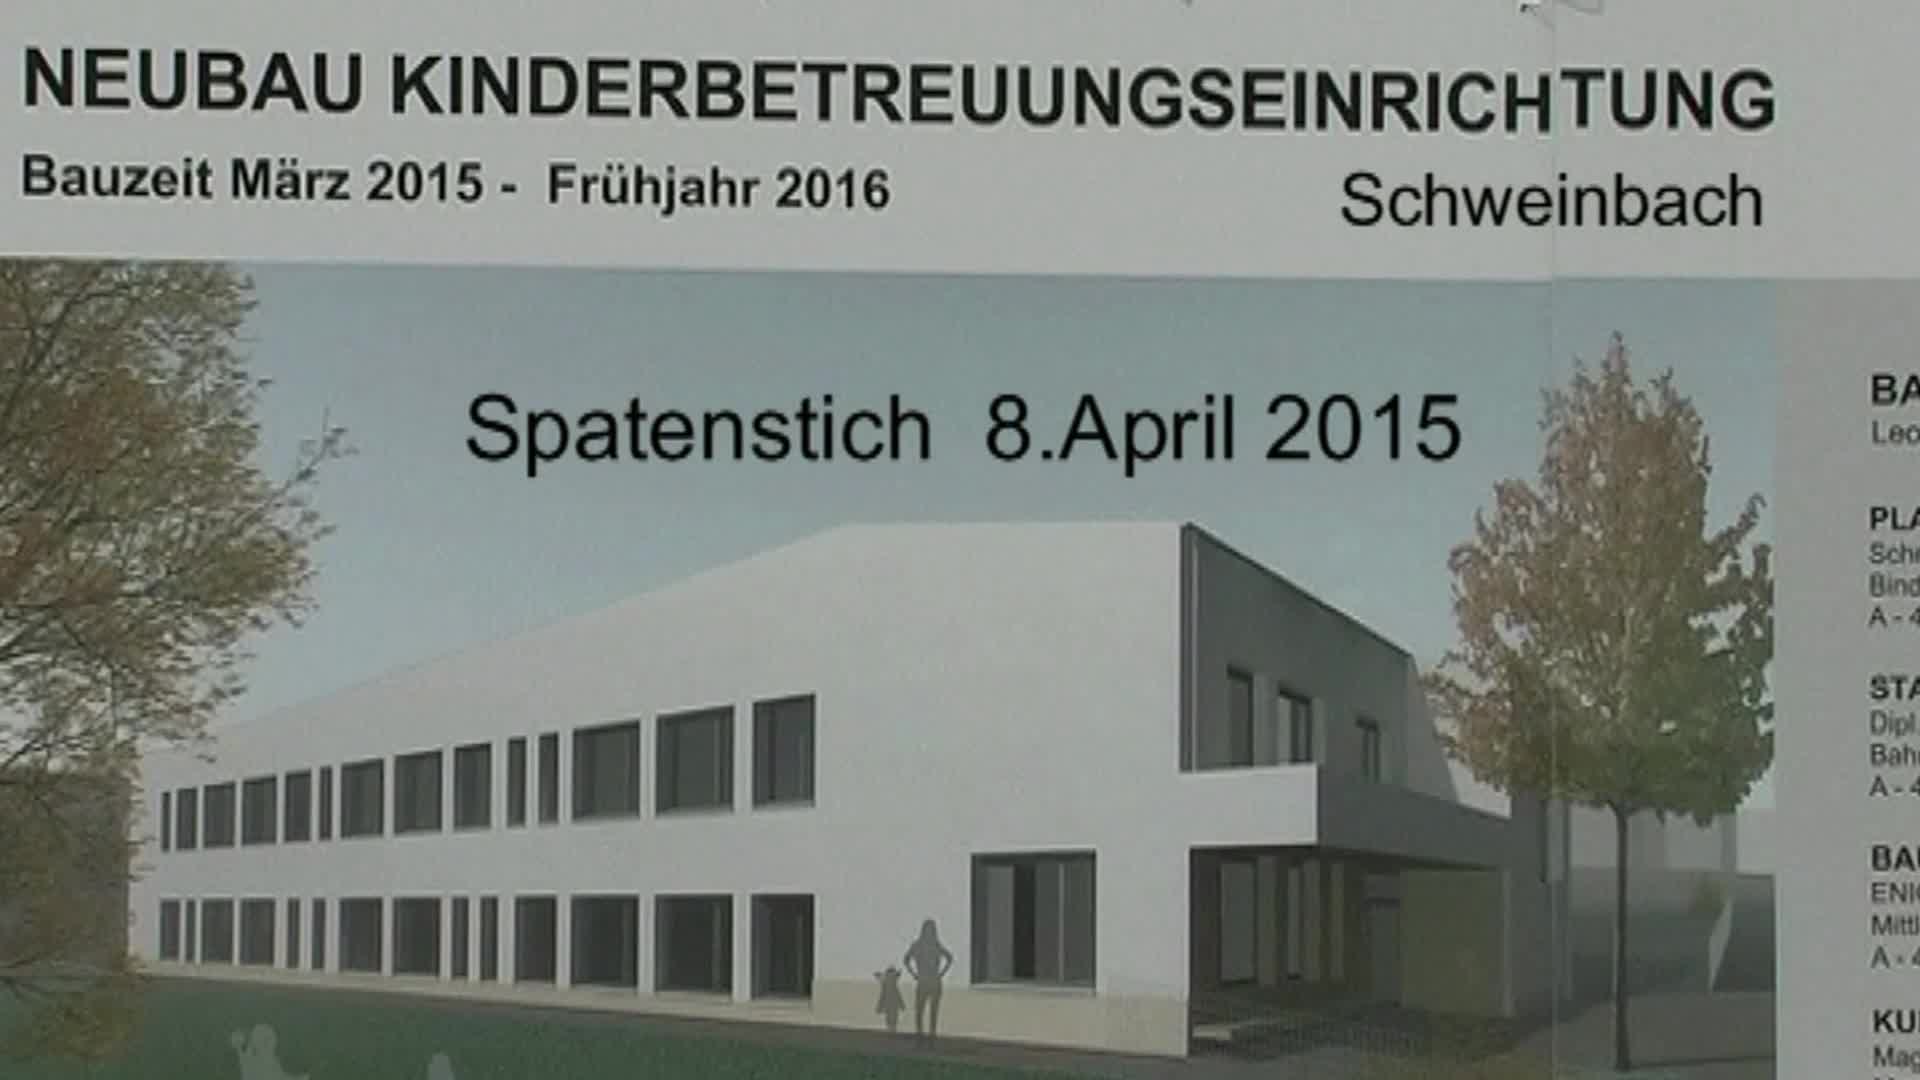 Spatenstich-Kinderbetreuungseinrichtung Schweinbach